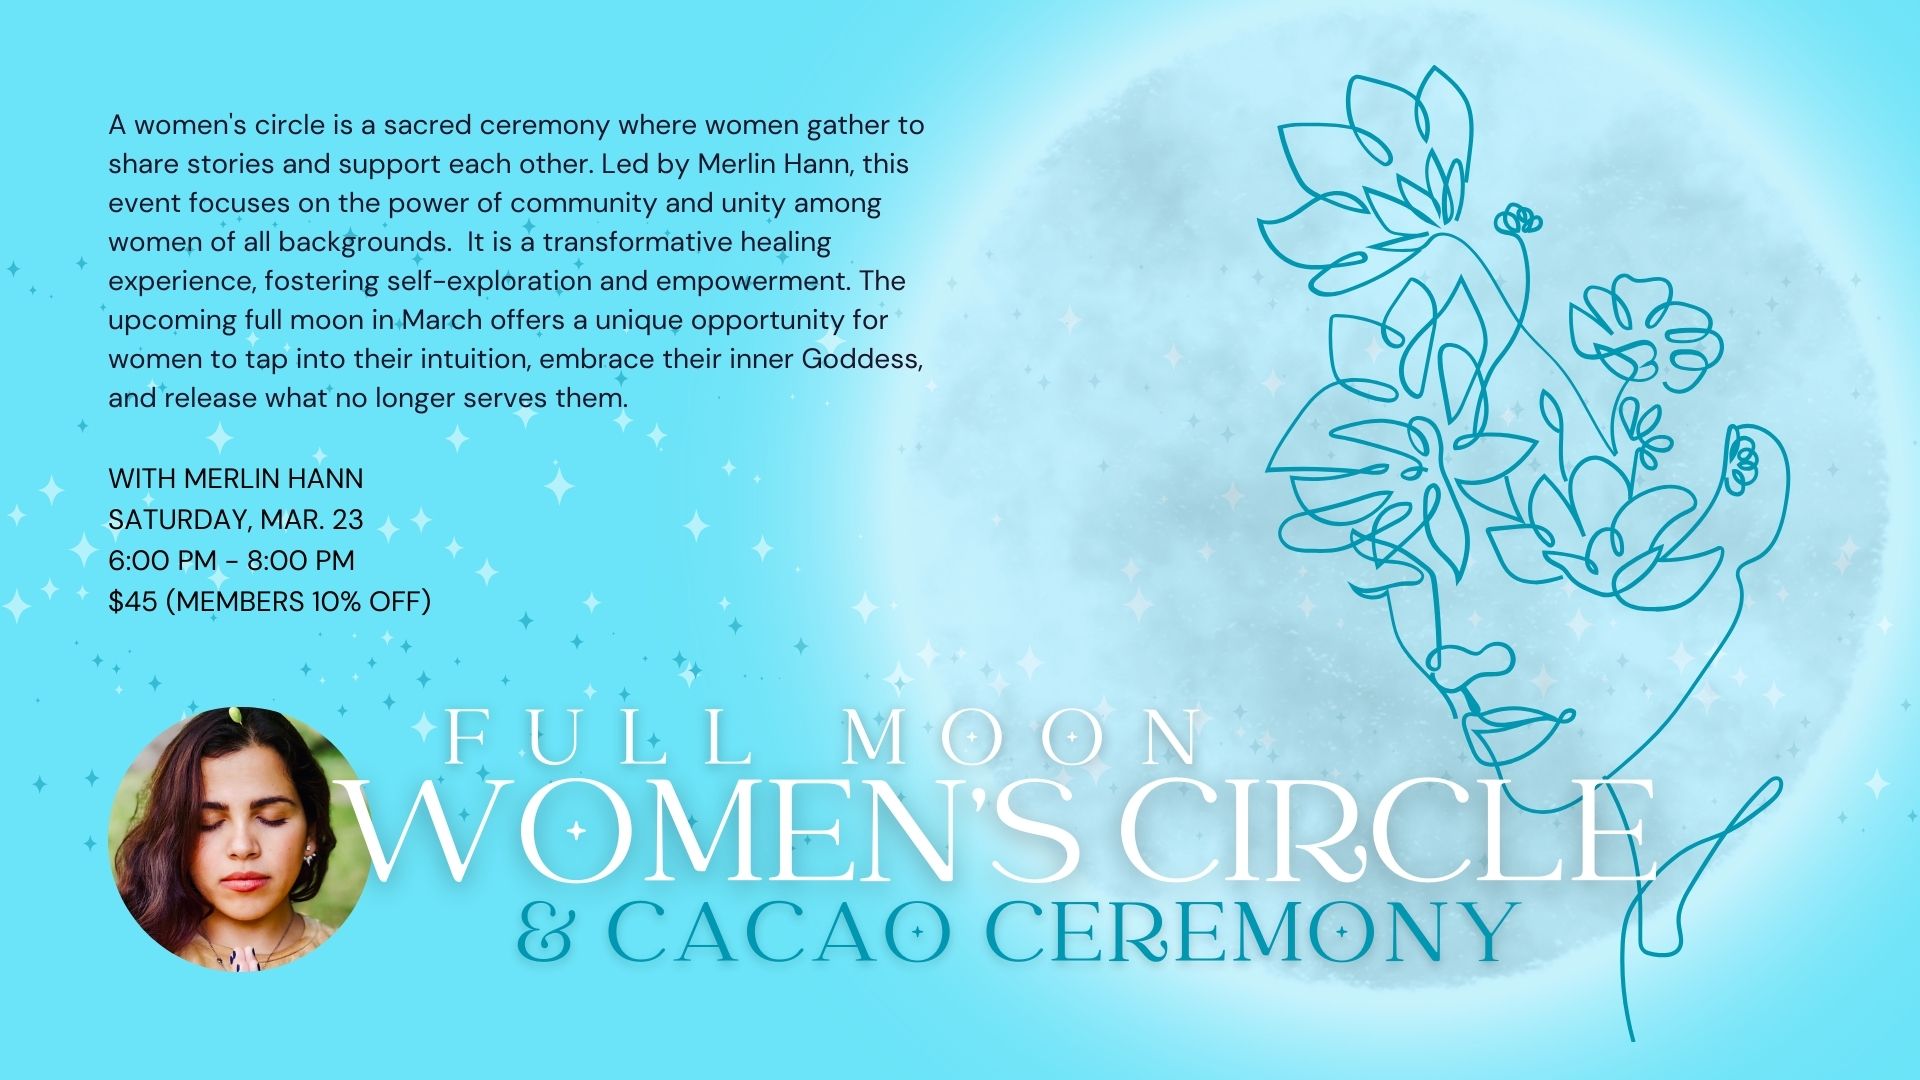 Flier for Full Moon Women's Circle